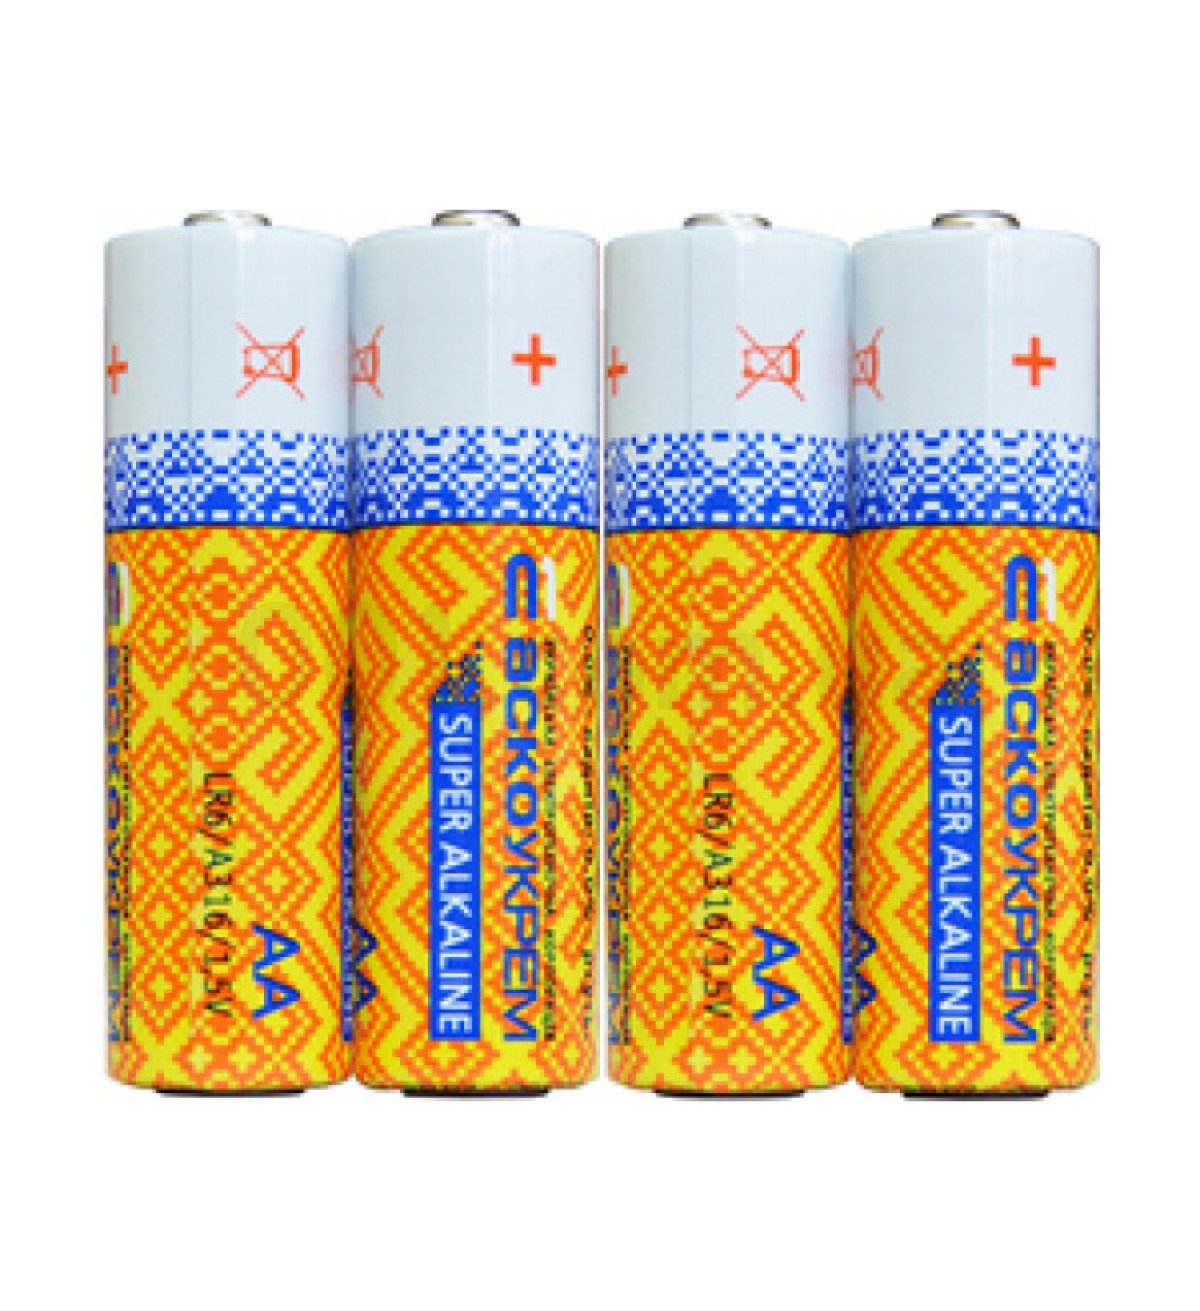 Батарейка лужна AА.LR6.SP4, типорозмір AA упаковка shrink 4 шт., АСКО-УКРЕМ 256_280.jpg